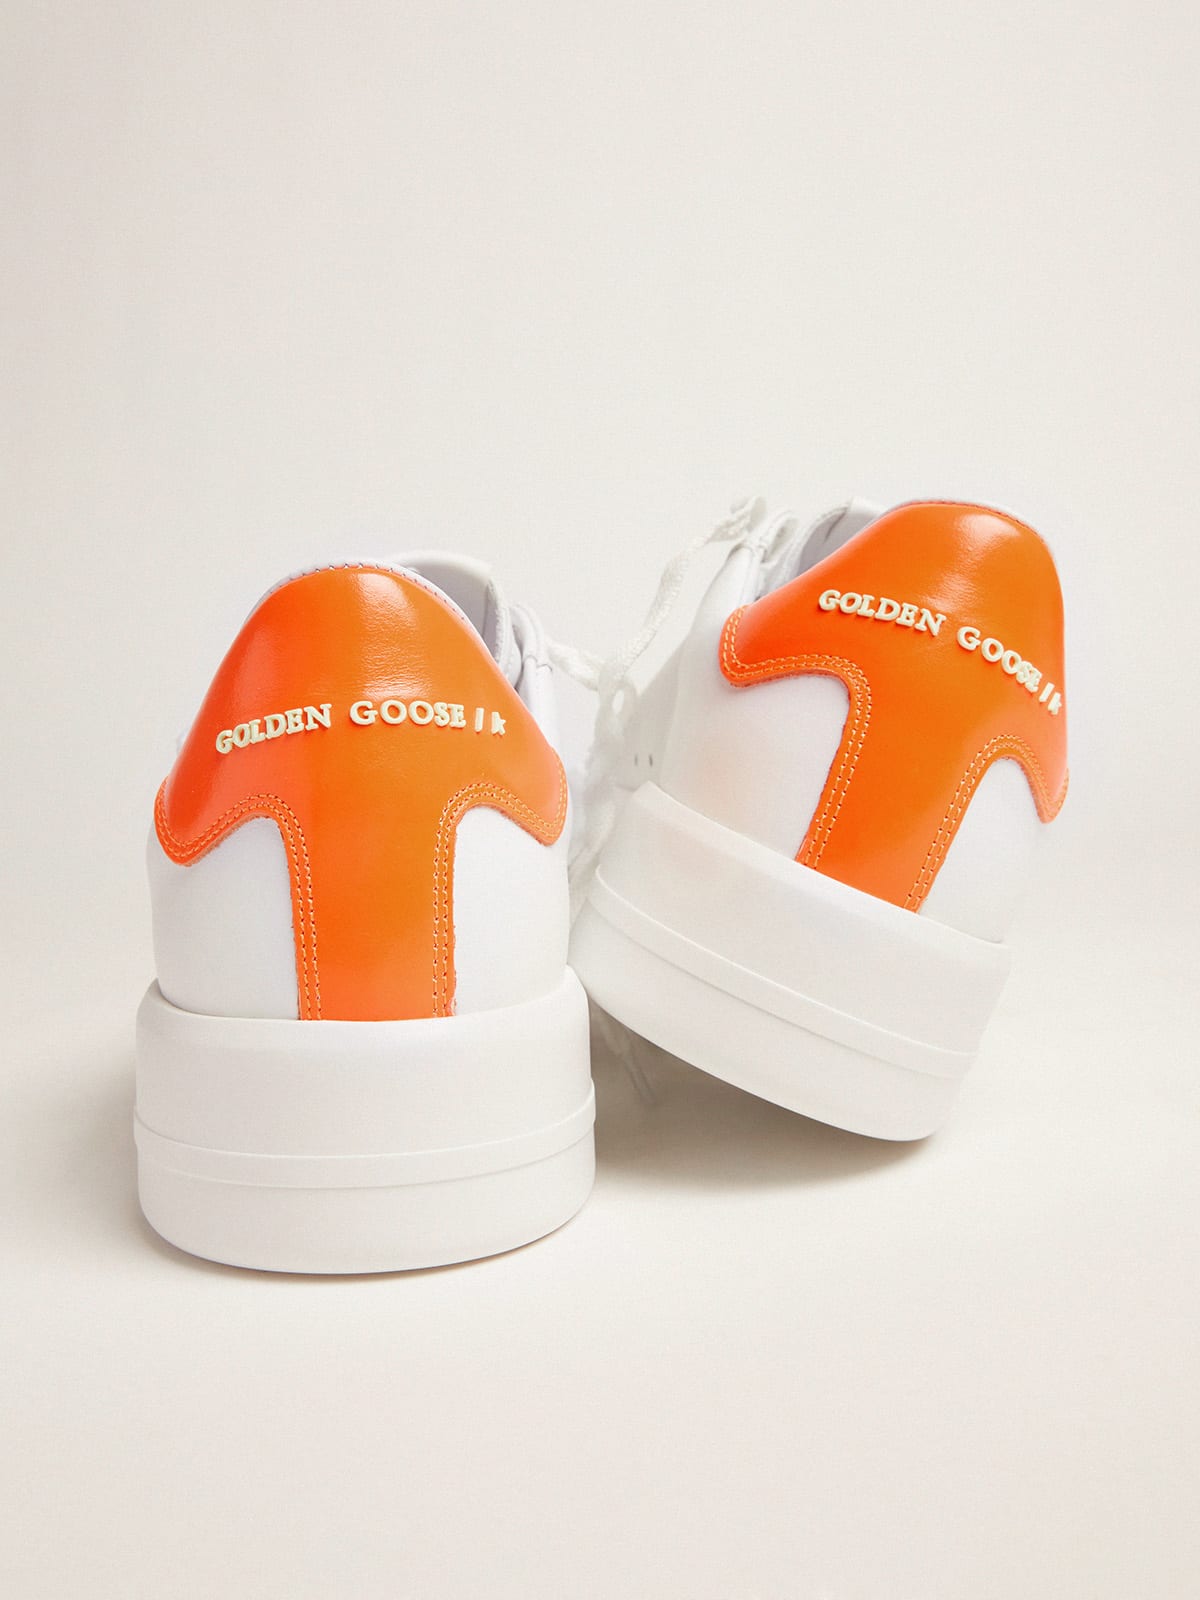 Golden Goose - Zapatillas deportivas Purestar blancas con refuerzo del talón naranja flúor in 